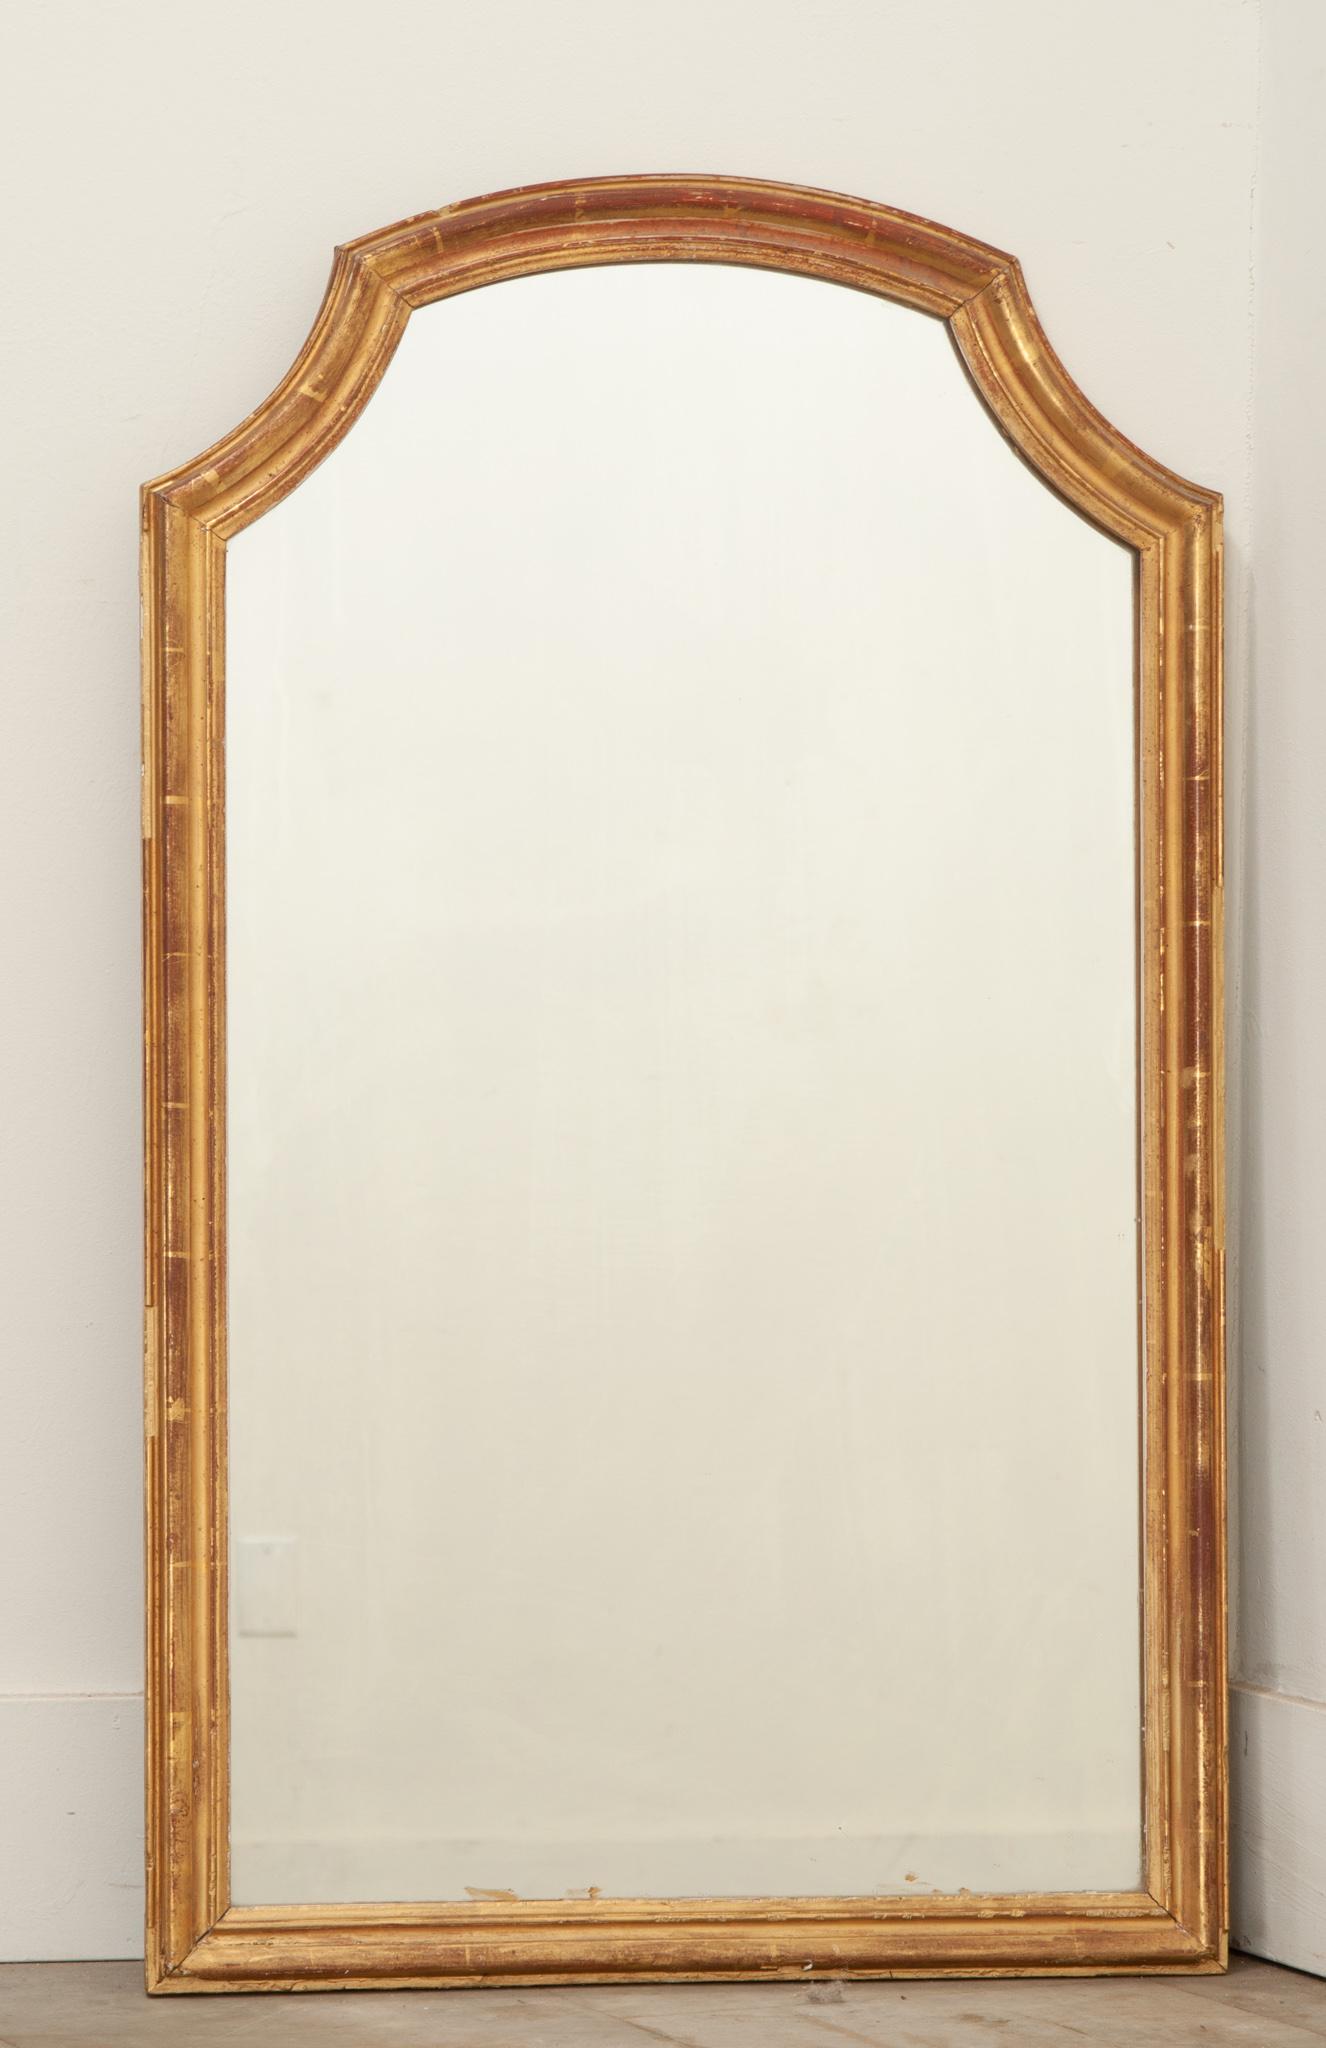 Petit miroir en bois doré fabriqué en France. La plaque de miroir est entourée d'un simple cadre doré avec un arc convexe au sommet. La dorure d'origine est patinée, révélant le bole rougeâtre en dessous, ce qui crée un contraste avec la finition